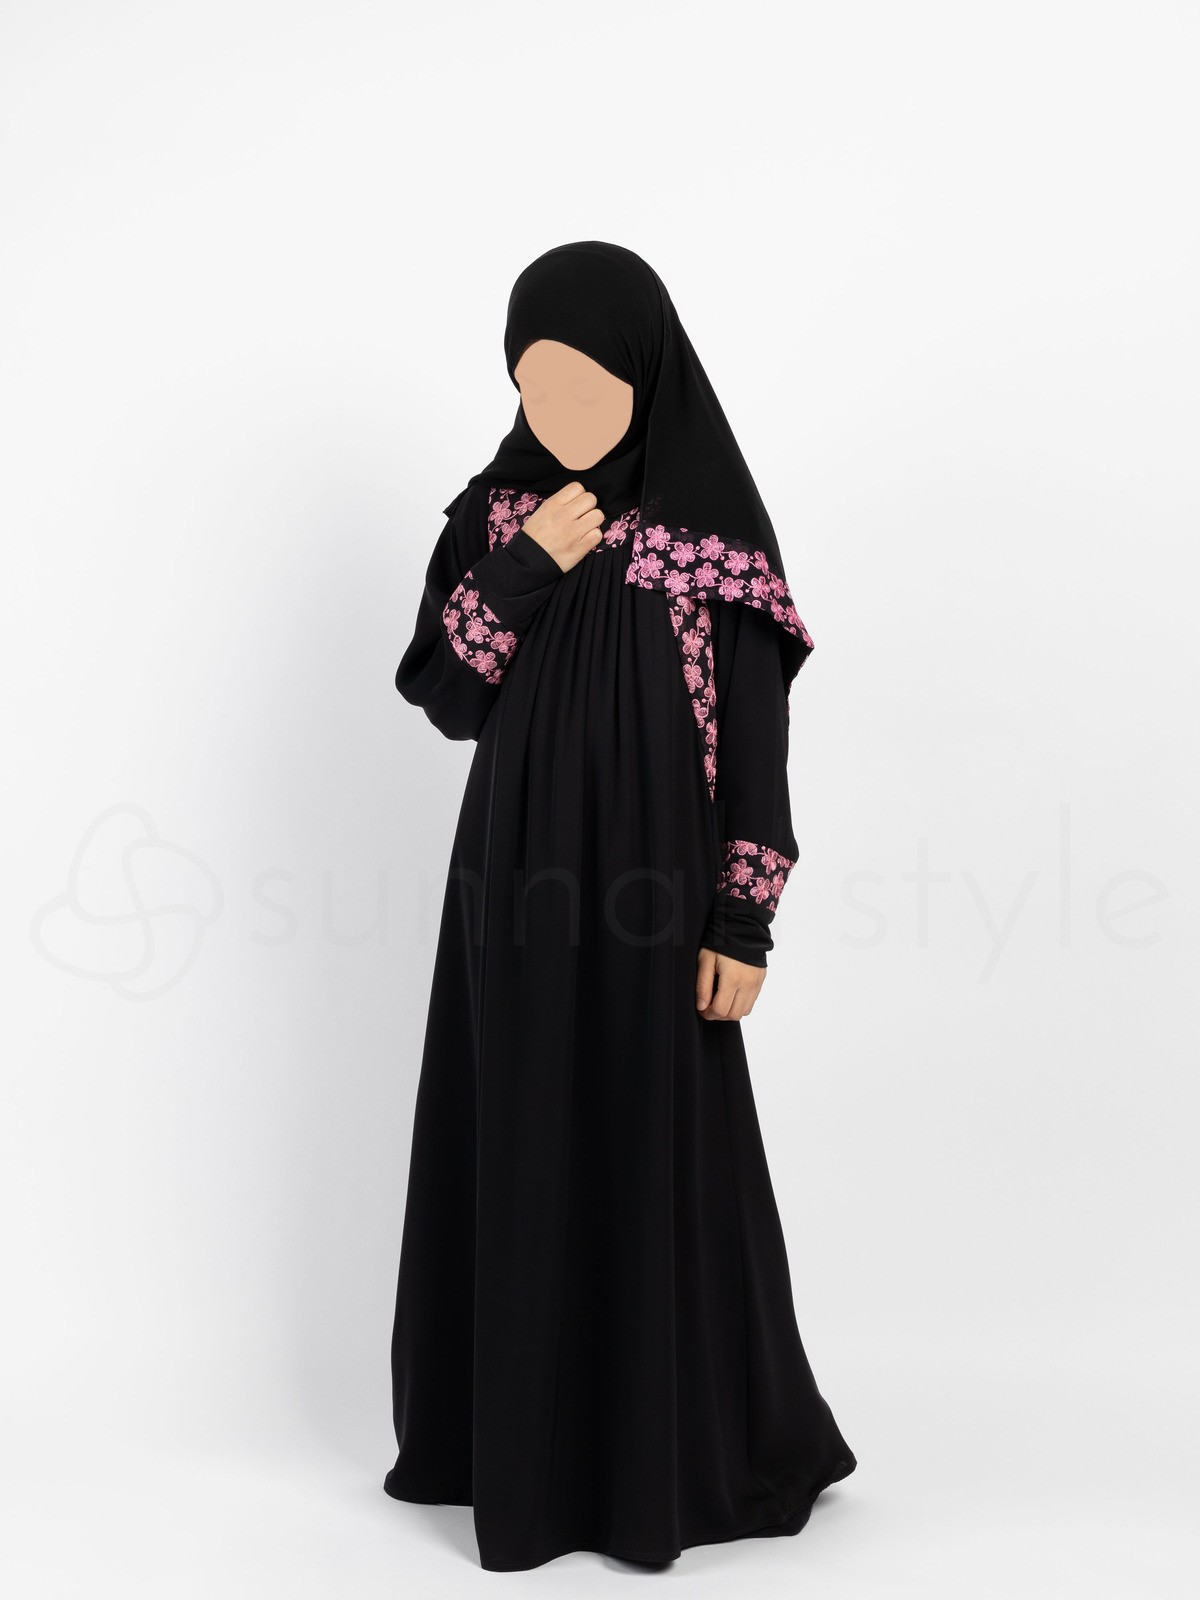 Sunnah Style - Girls Daisy Umbrella Abaya